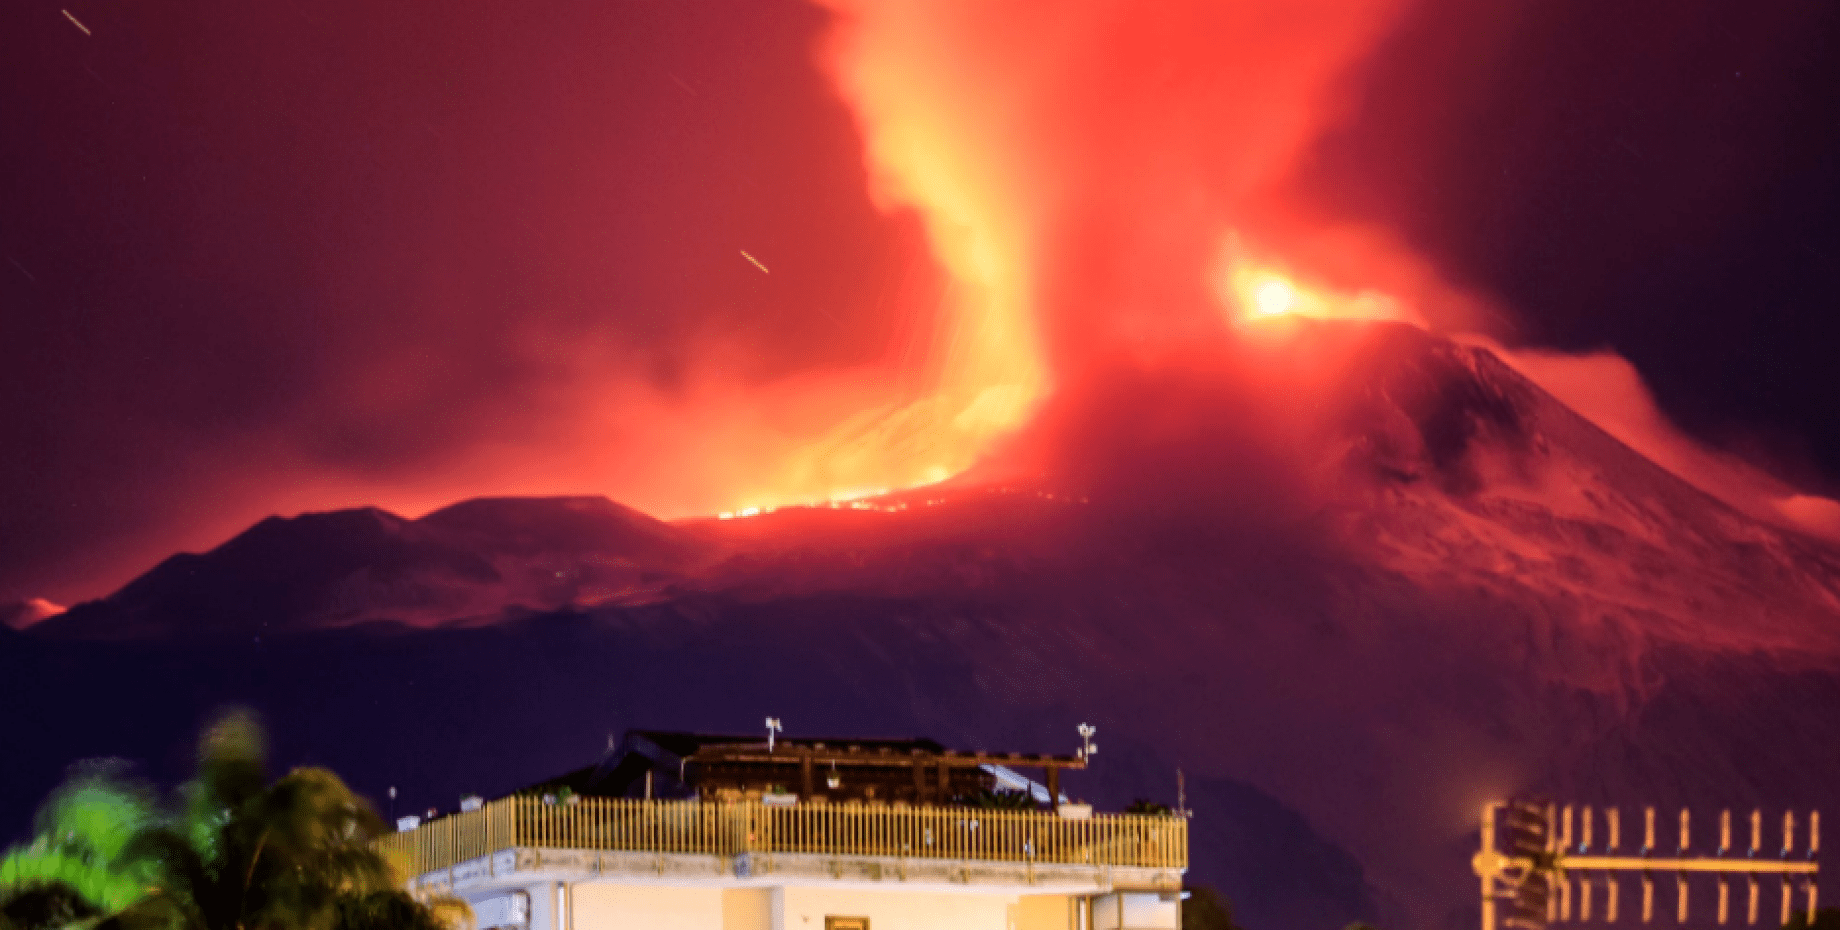 Извержение вулкана Этна 13-14 декабря 2020 года, вулкан Этна, извержение, лава